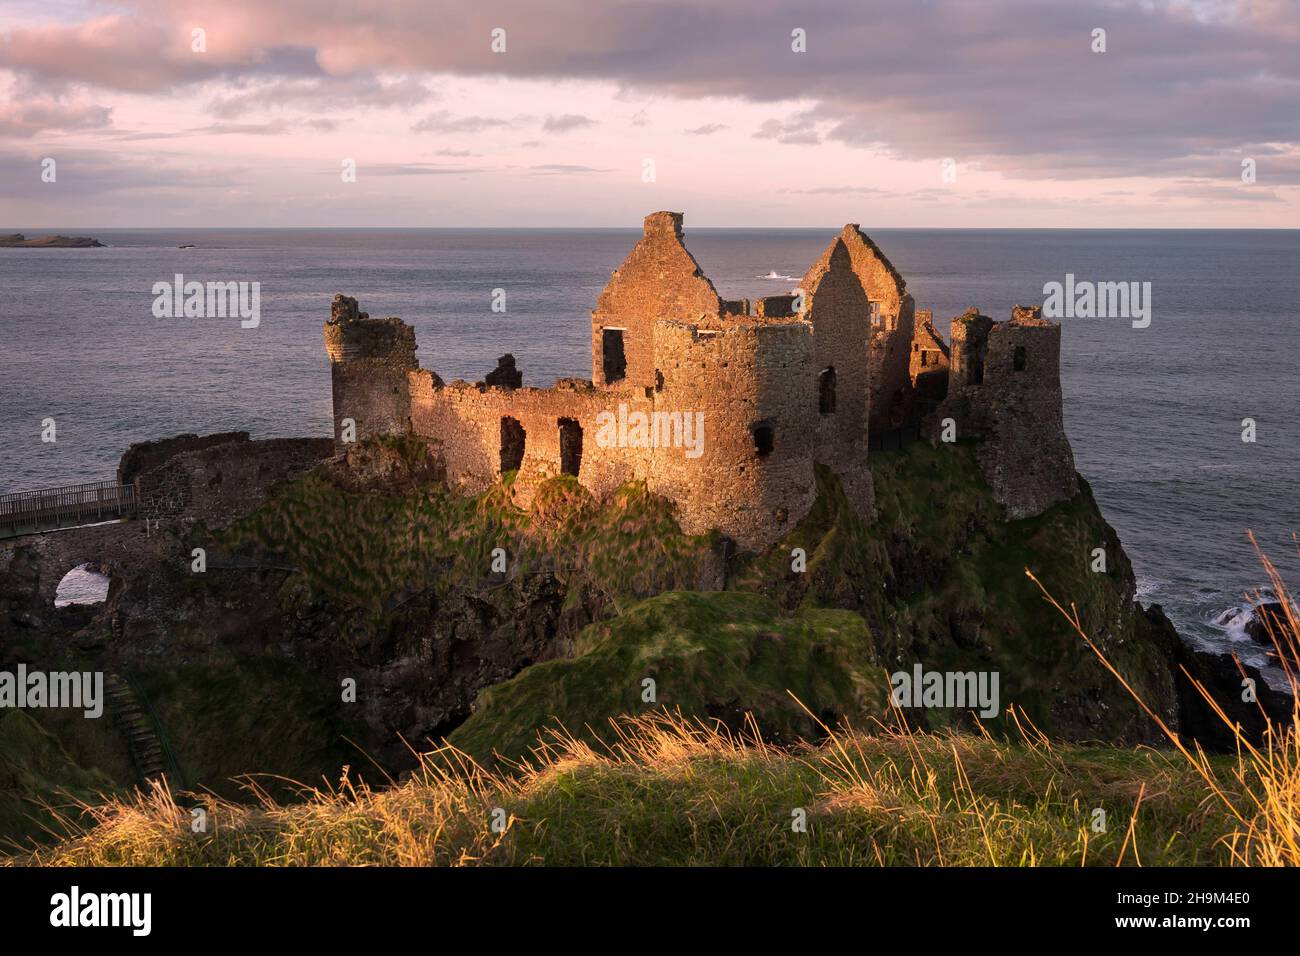 Die ikonischen Ruinen von Dunluce Castle liegen auf einem Felsvorsprung an der Nord-Antrim-Küste in Nordirland. Stockfoto